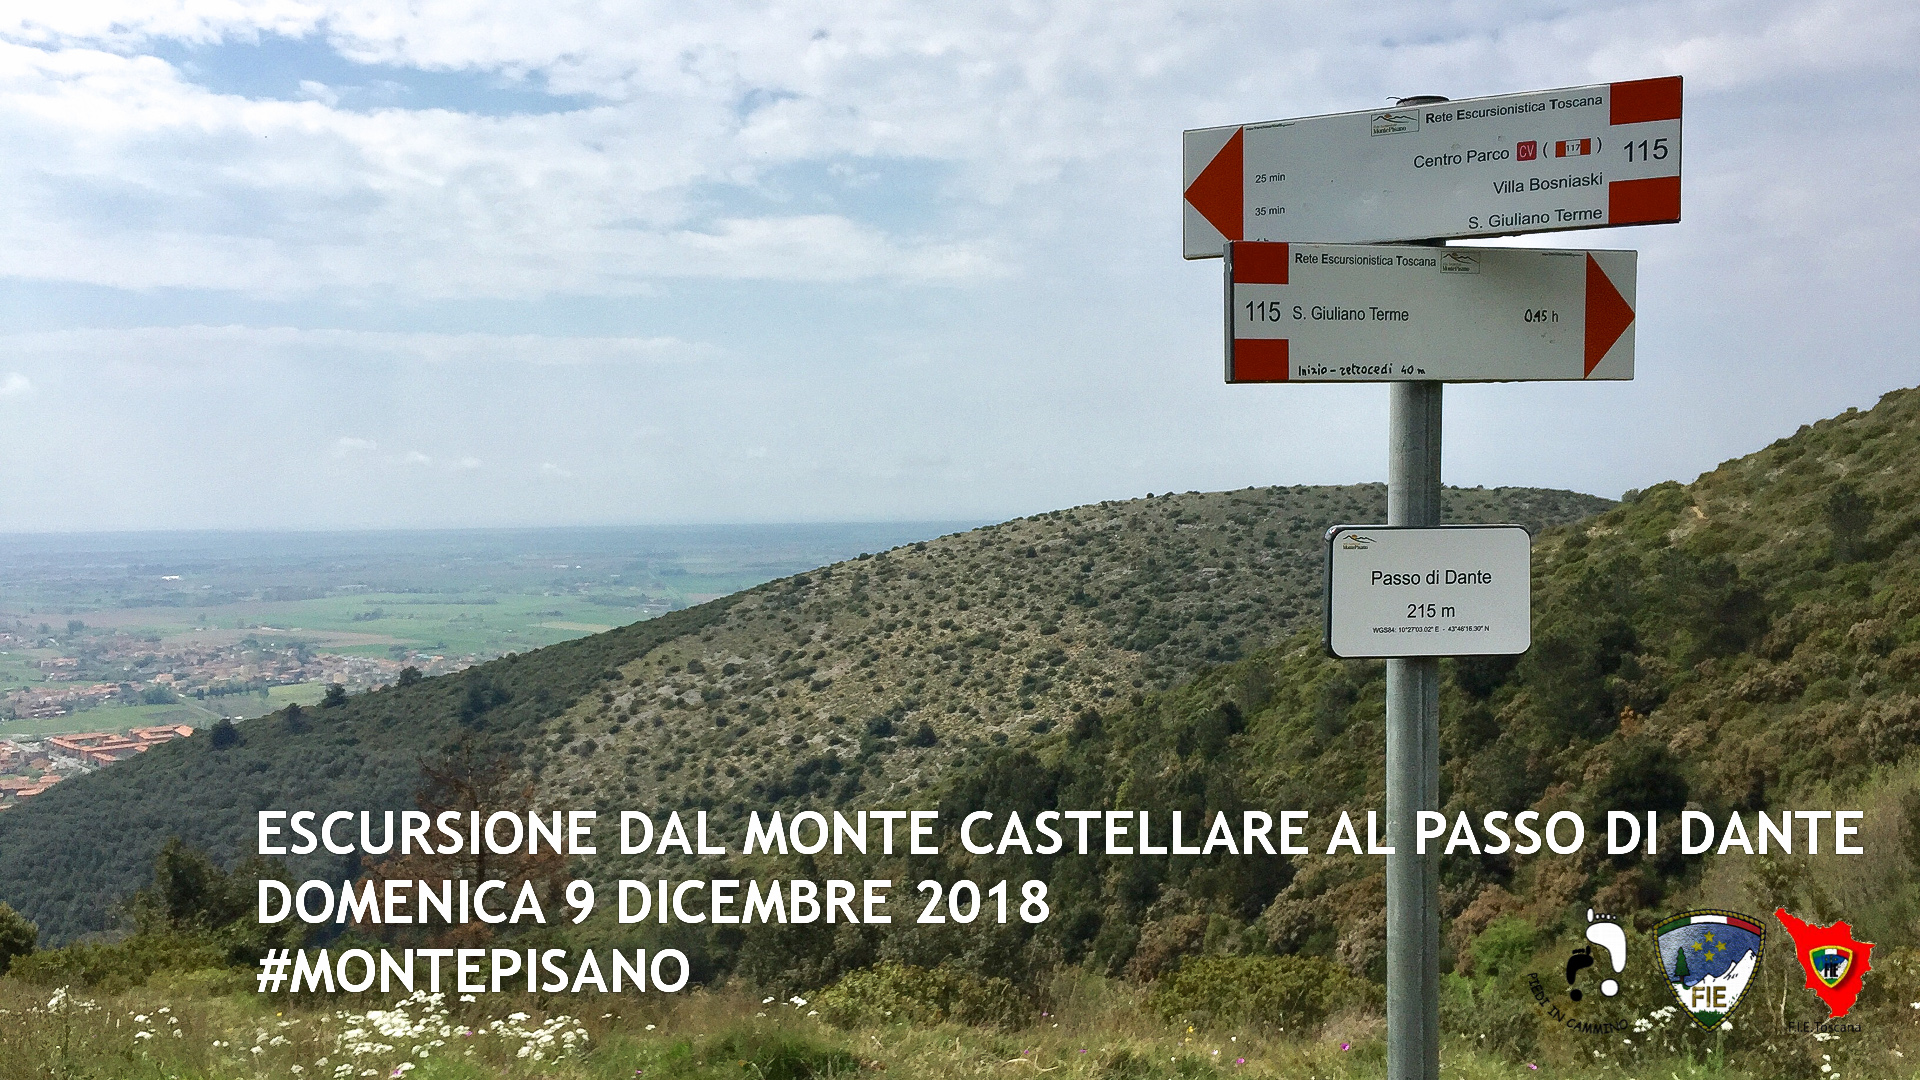 Escursione dal Monte Castellare al "Passo di Dante"